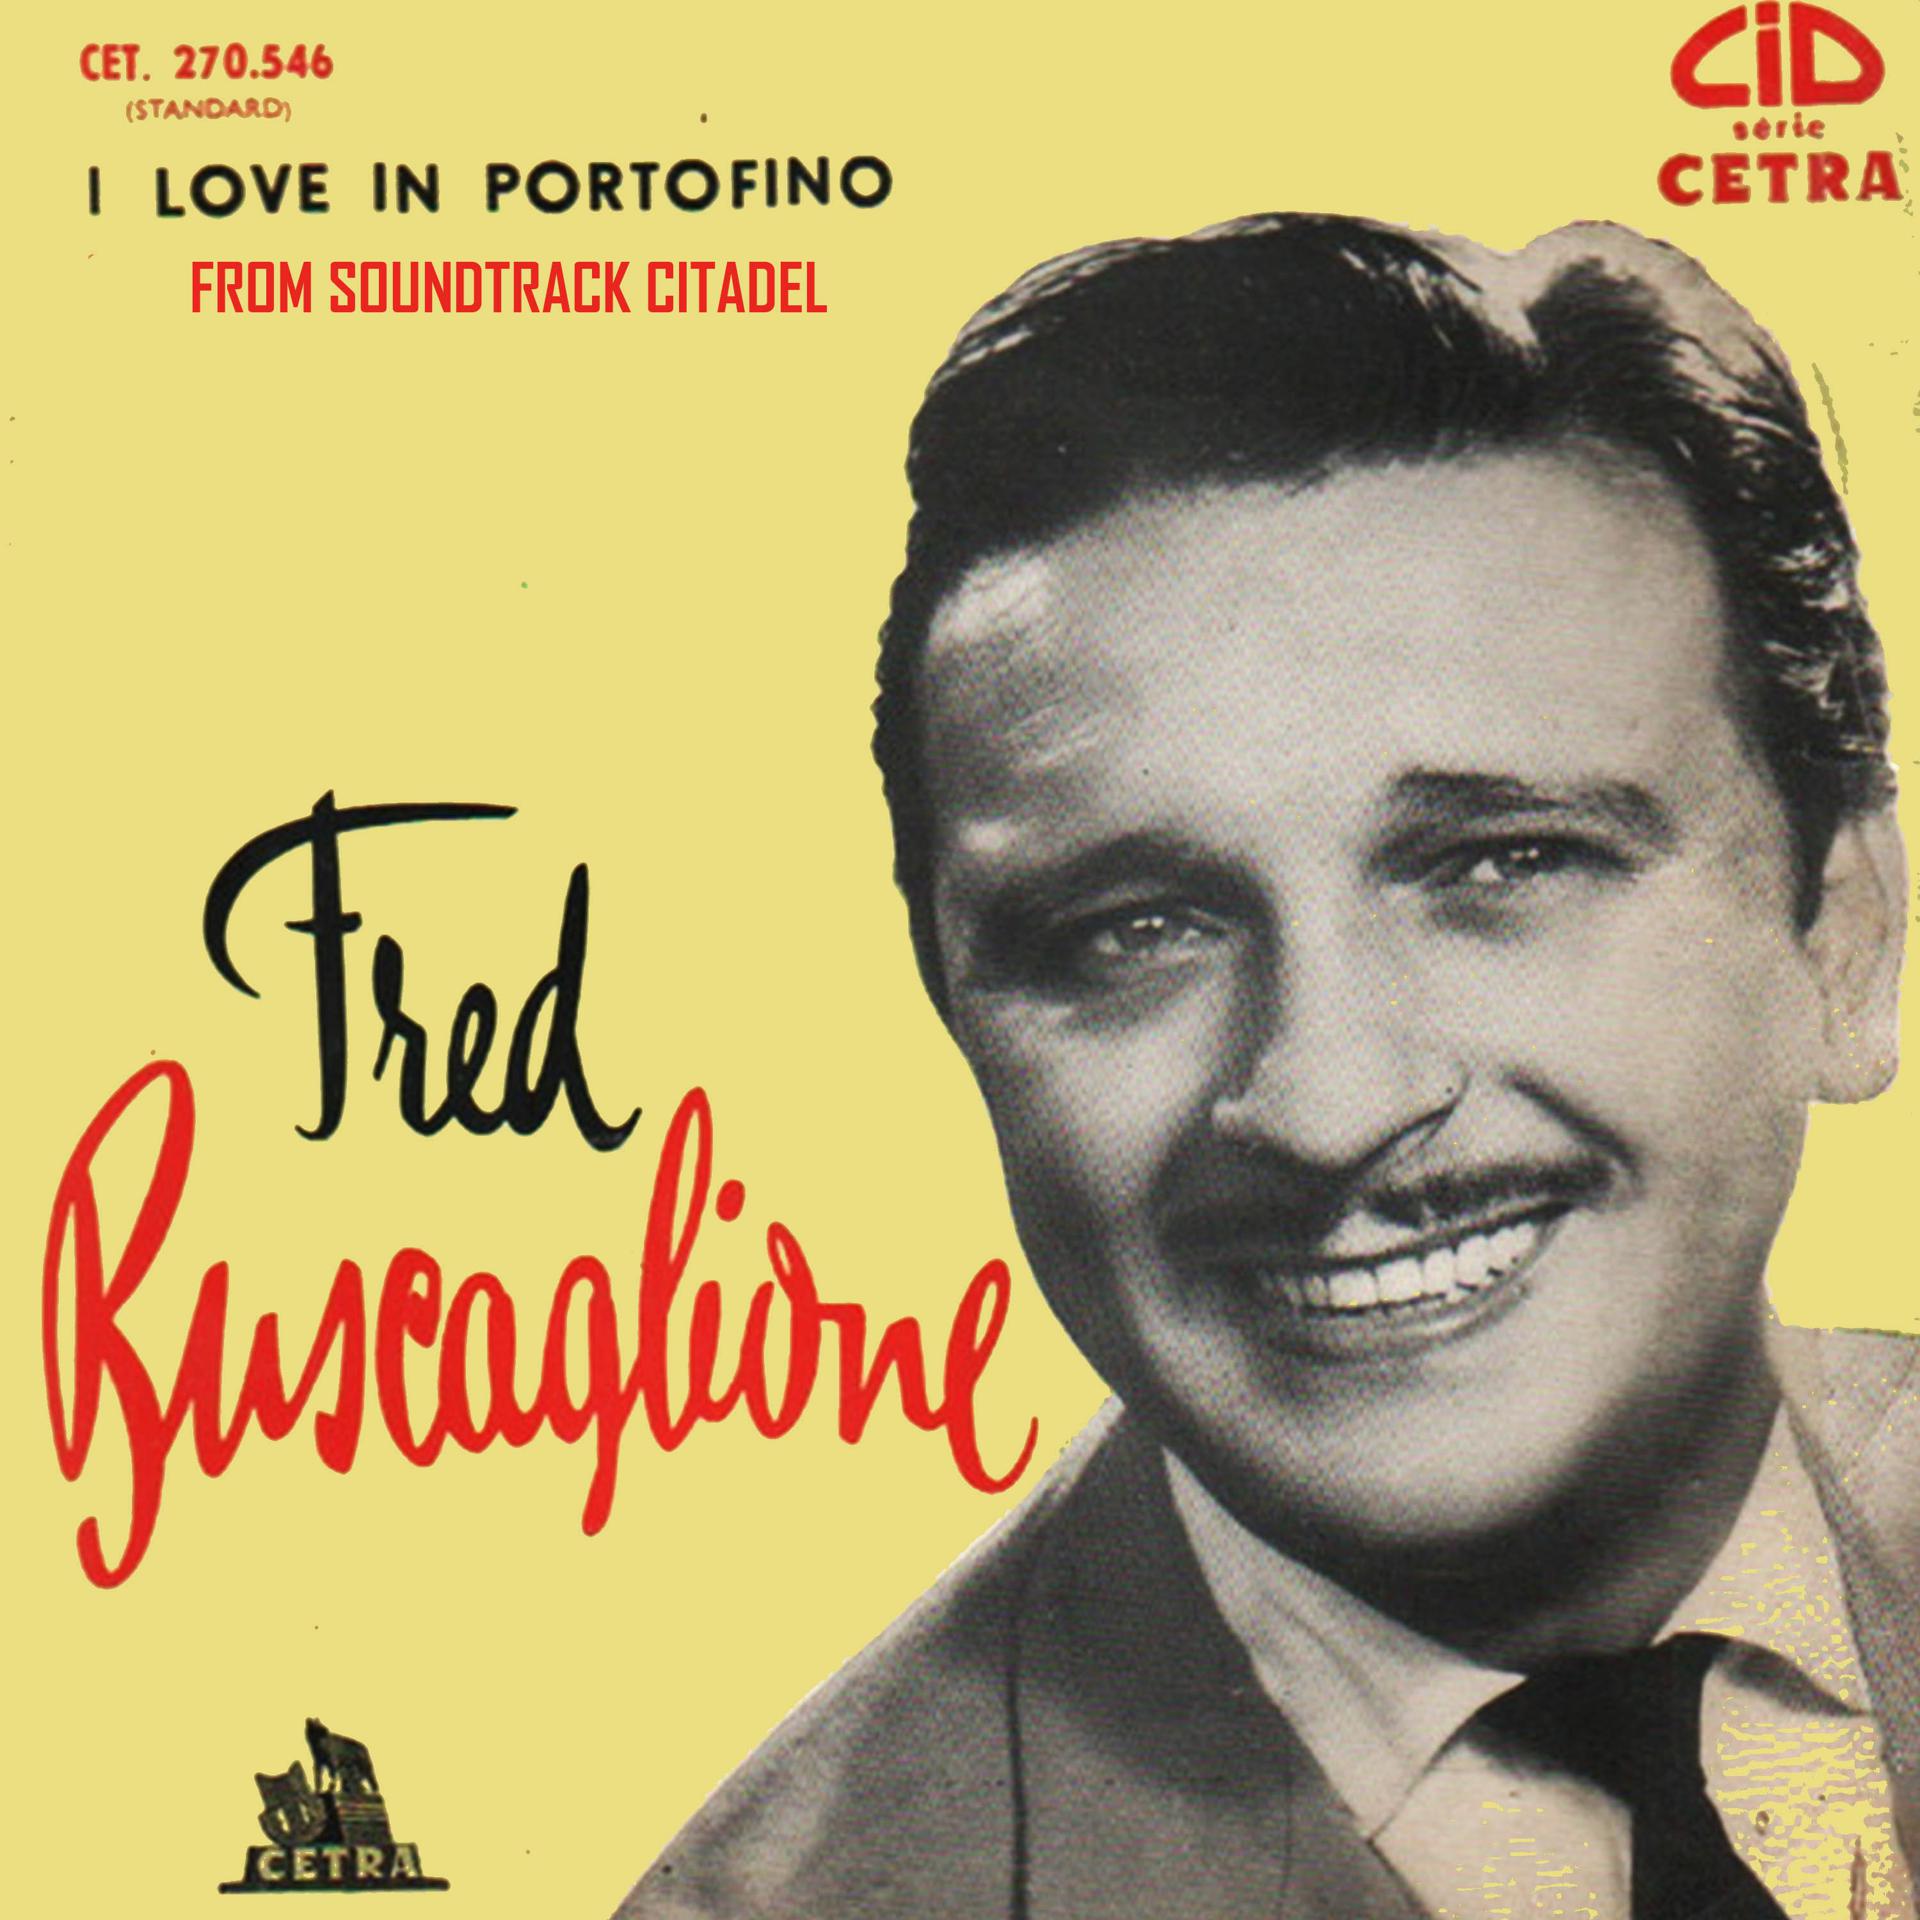 Love in portofino. Fred Buscaglione. Fred Buscaglione 1959. Fred Buscaglione рет обложка альбома.